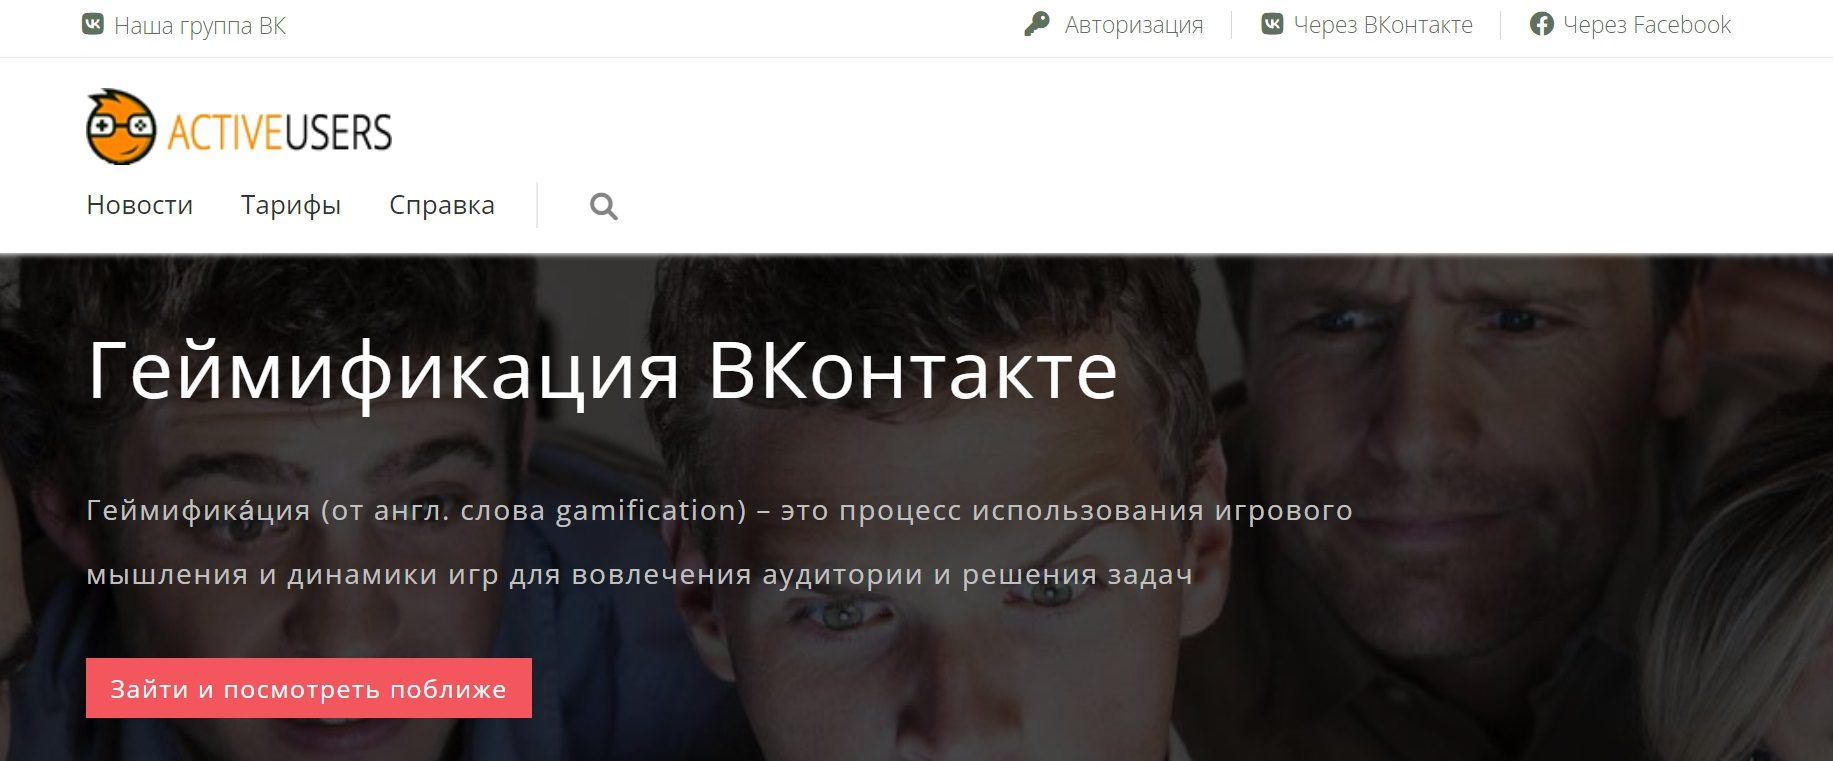 Сайт Павловского